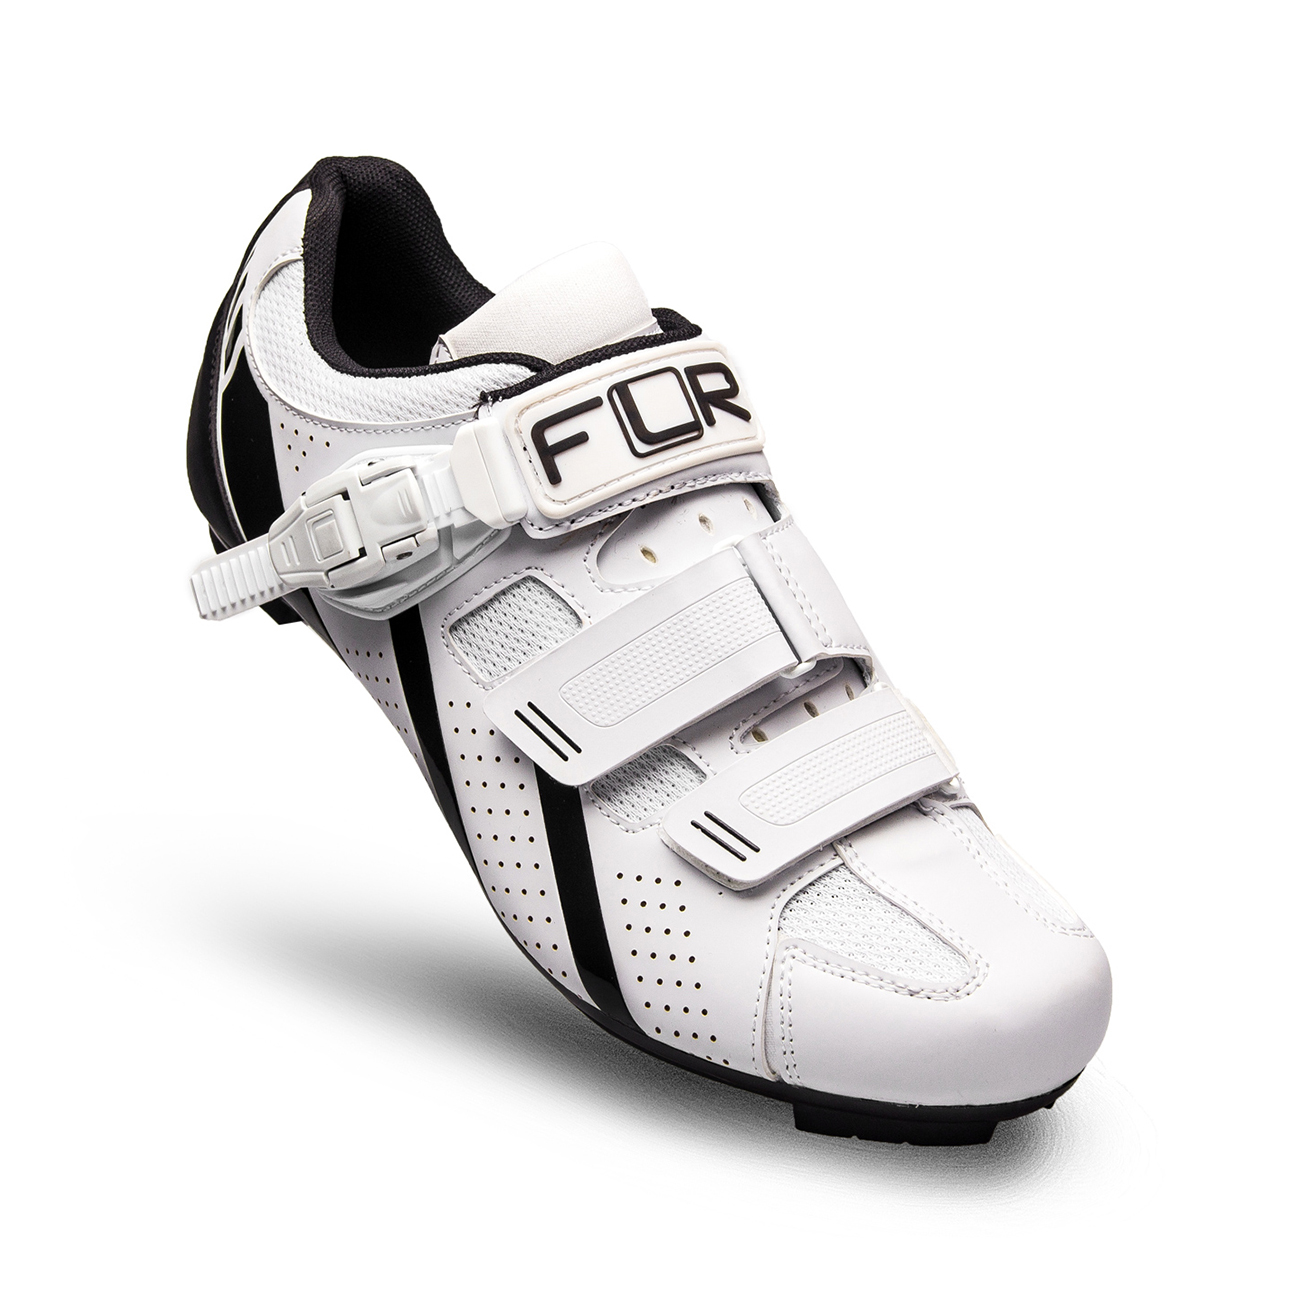 
                FLR Cyklistické tretry - F15 - biela/čierna 45
            